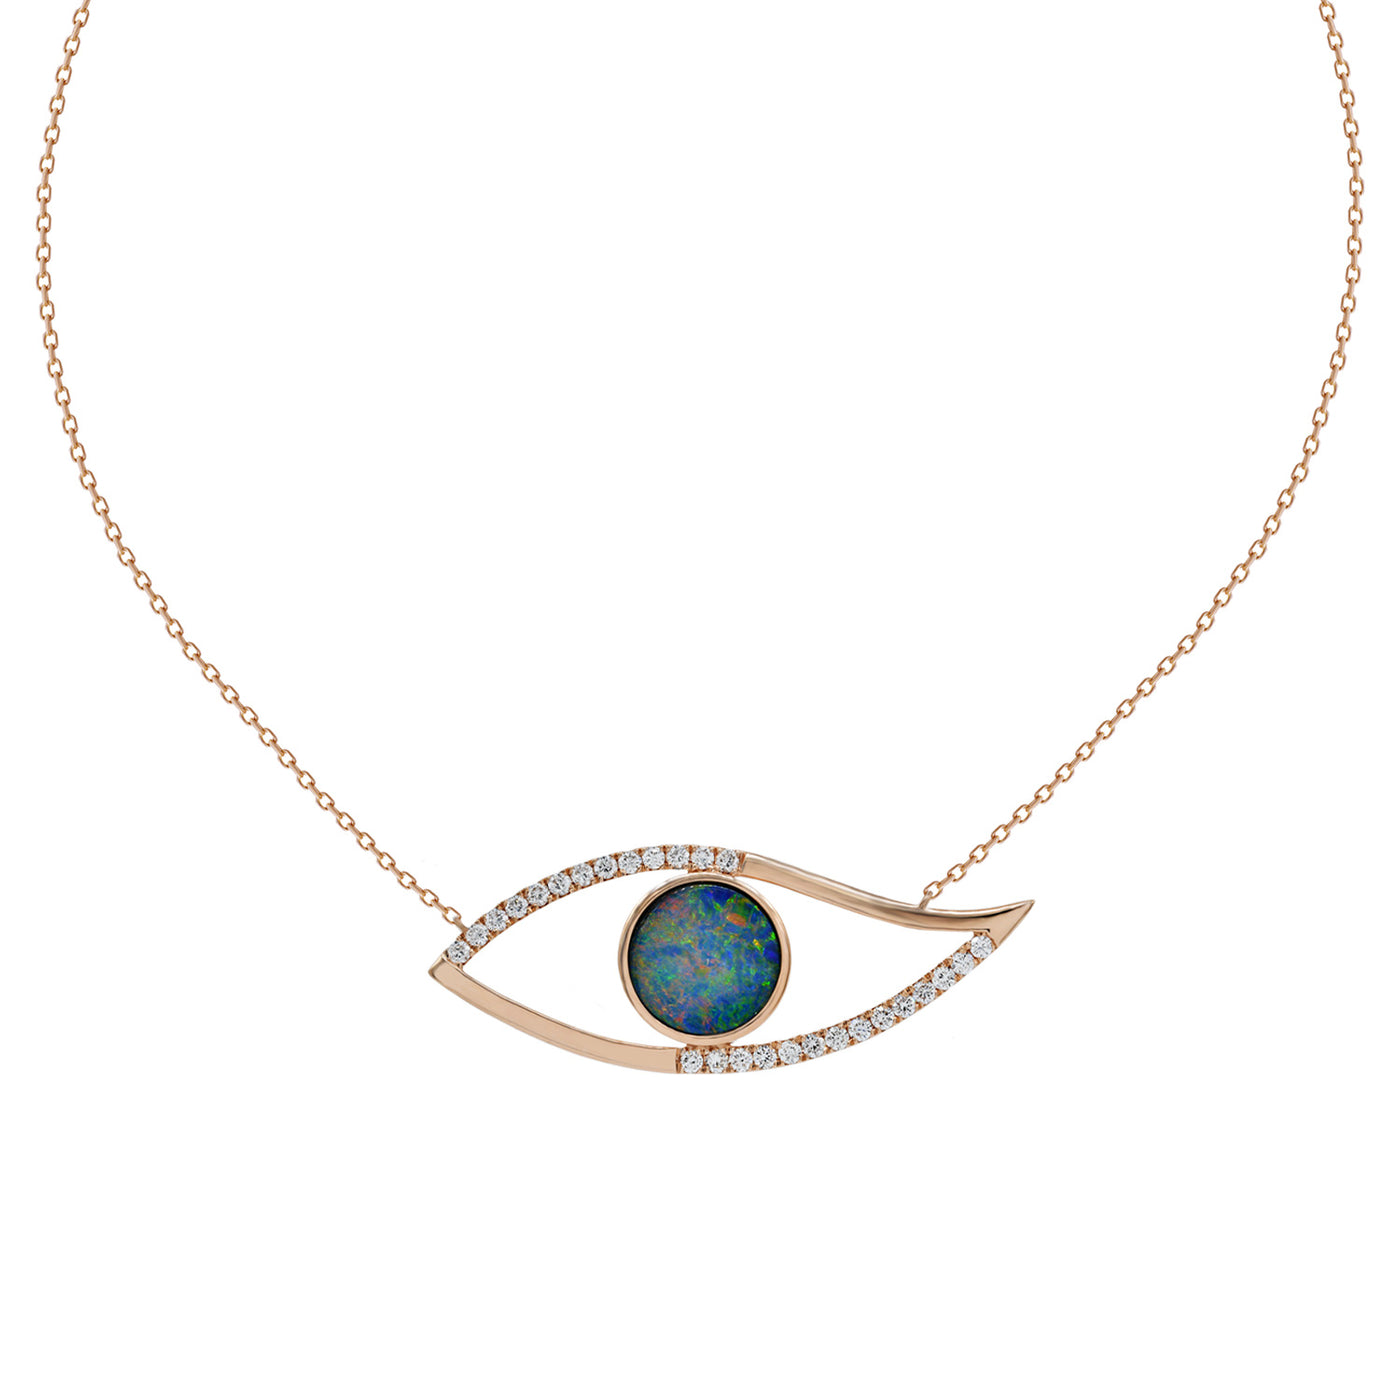 Evil eye necklace. Diamond evil eye necklace. Opal eye necklace. Rose gold evil eye necklace.